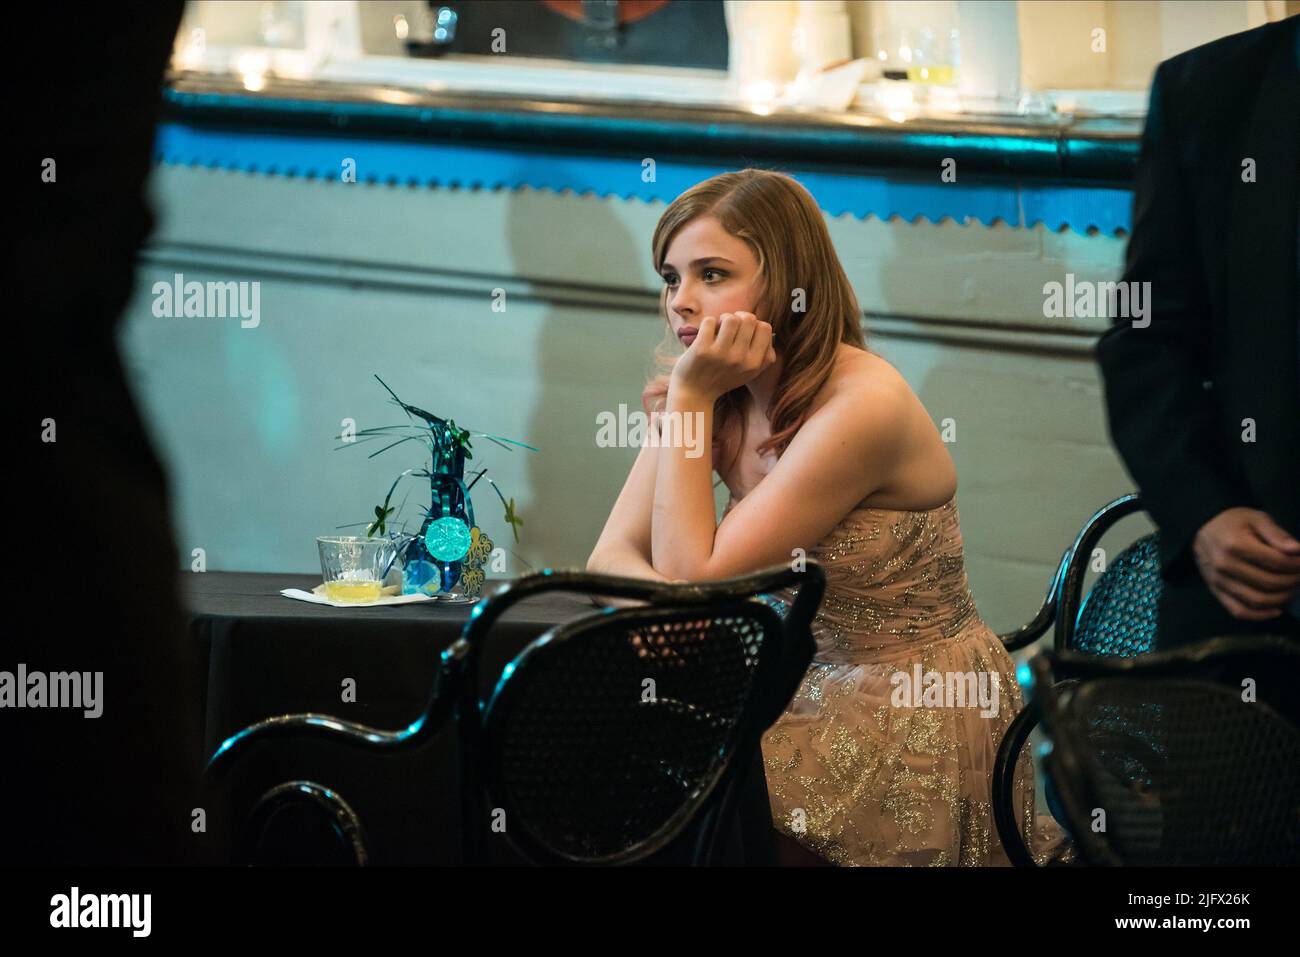 Laggies (2014) - Chloë Grace Moretz as Annika - IMDb